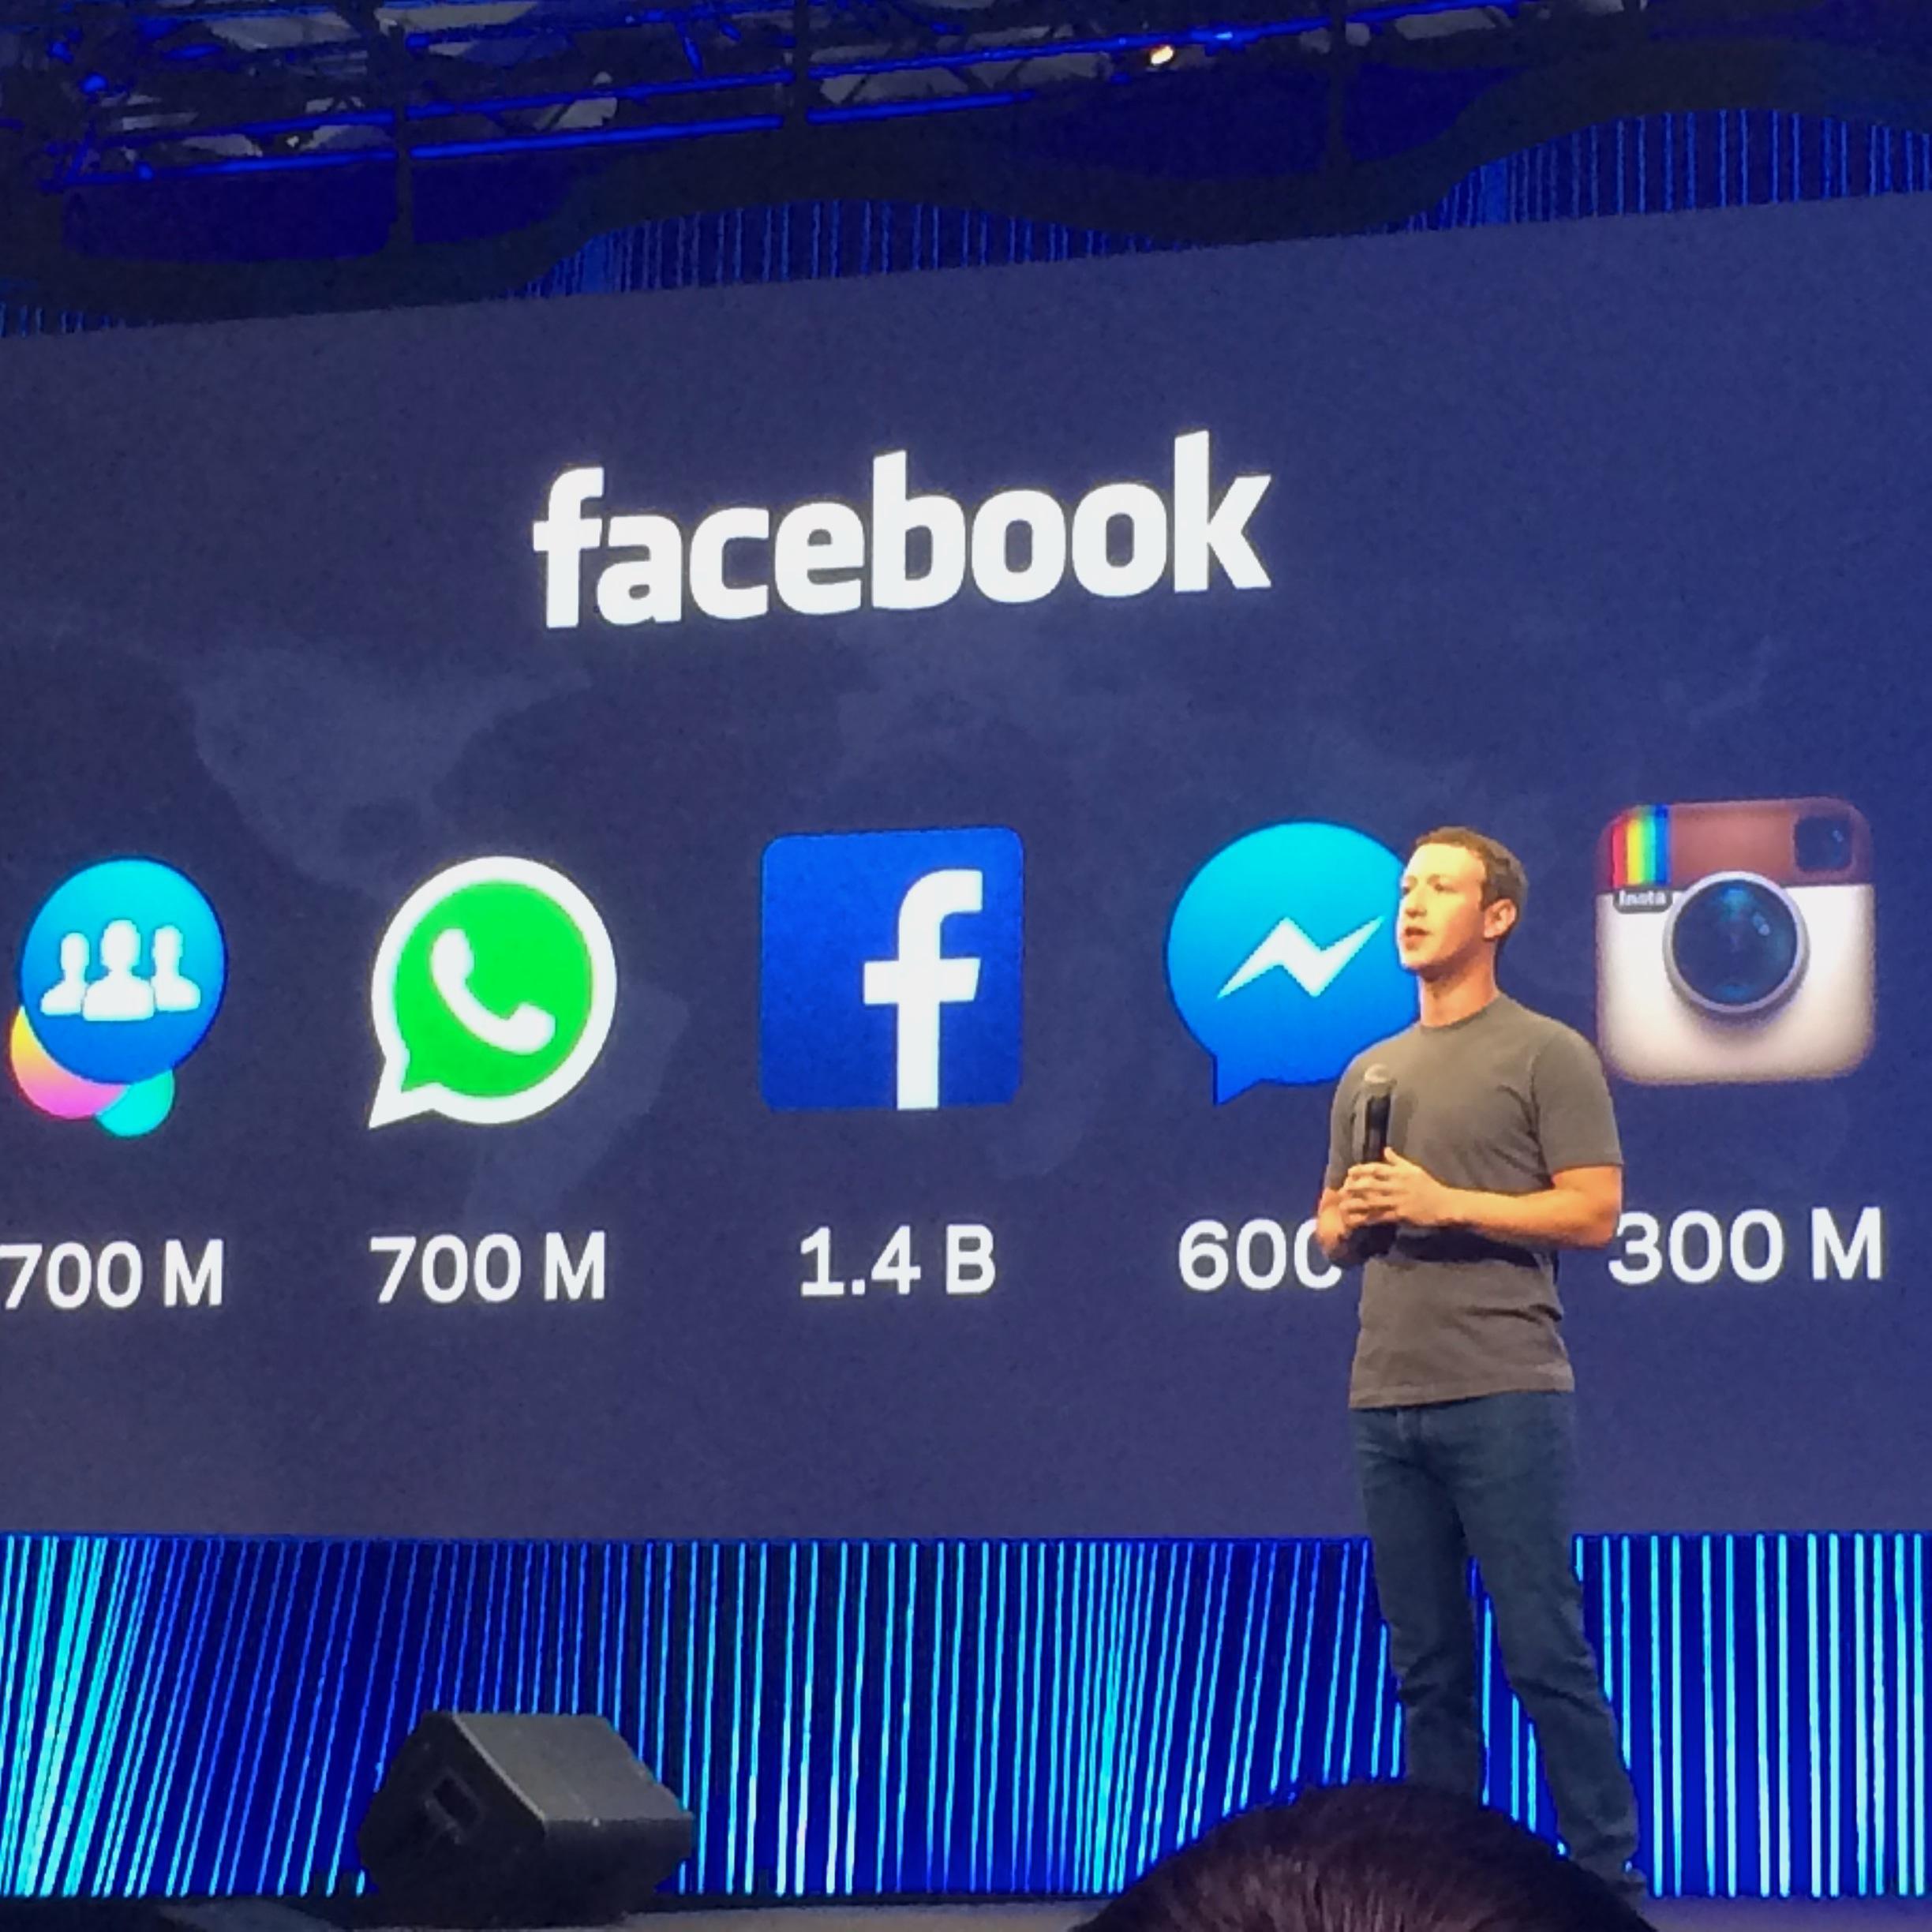 Facebookはユーザーを引き付けておくために大量の製品を提供している。